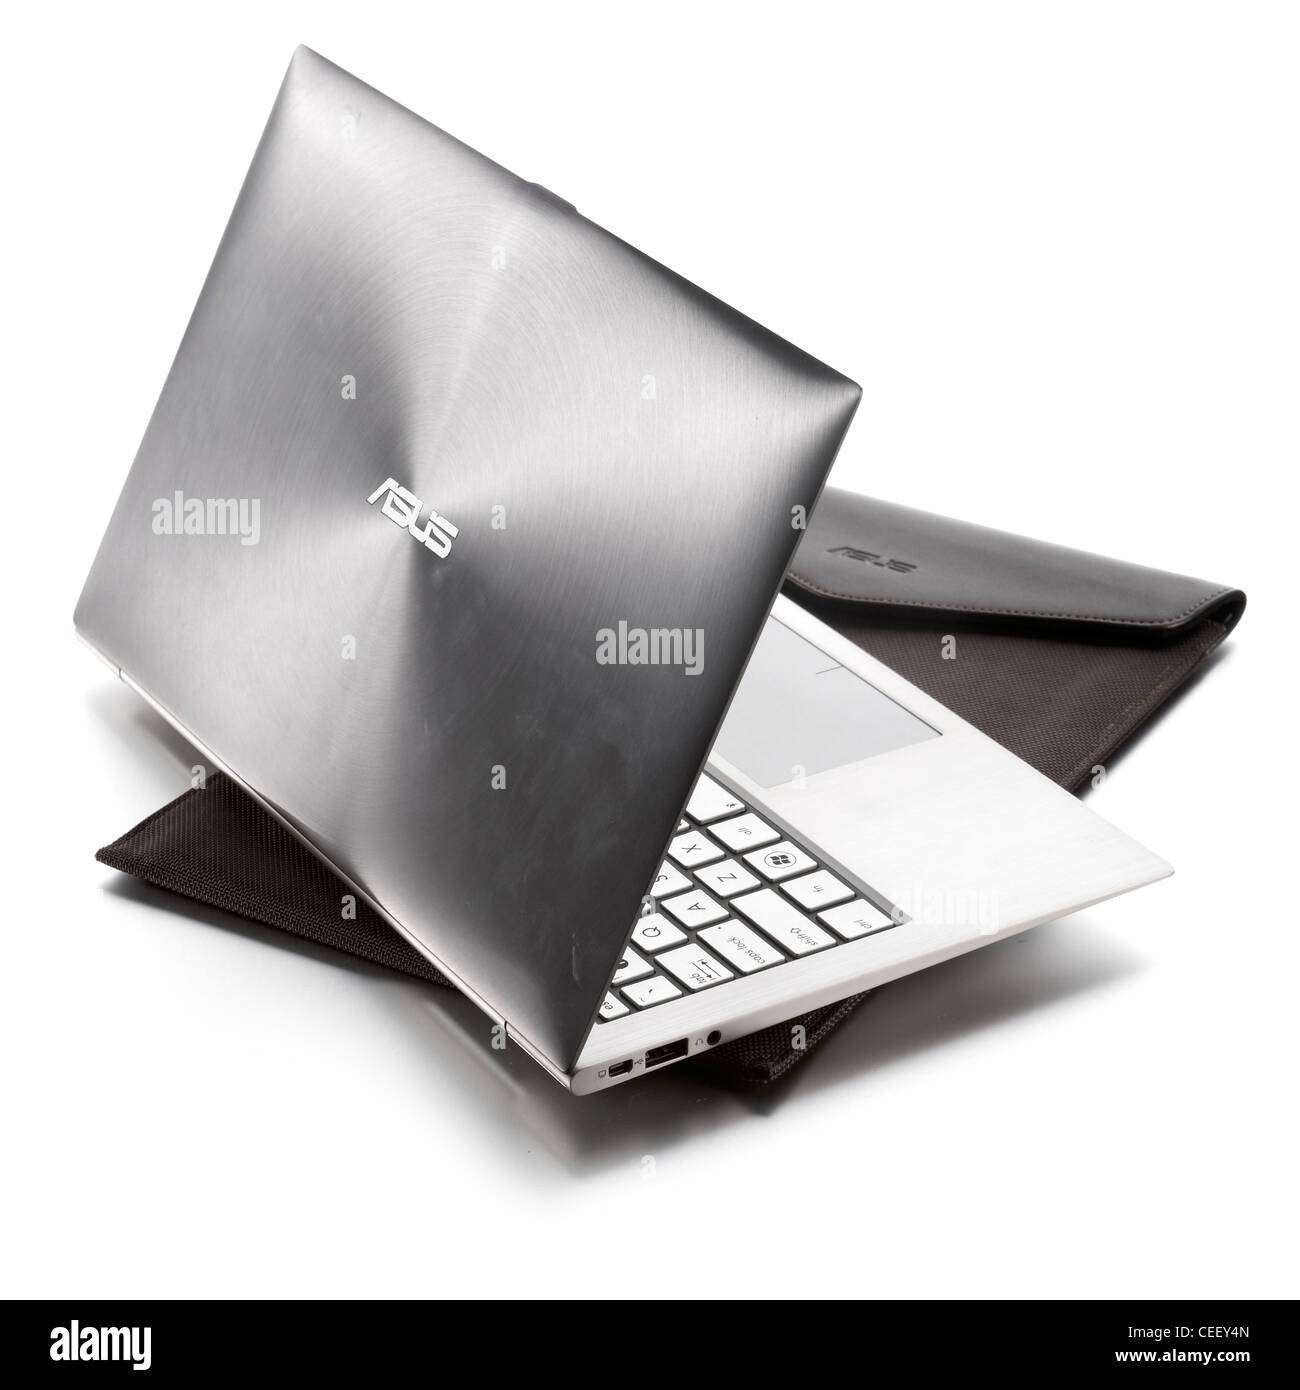 Asus brushed metal laptop Stock Photo